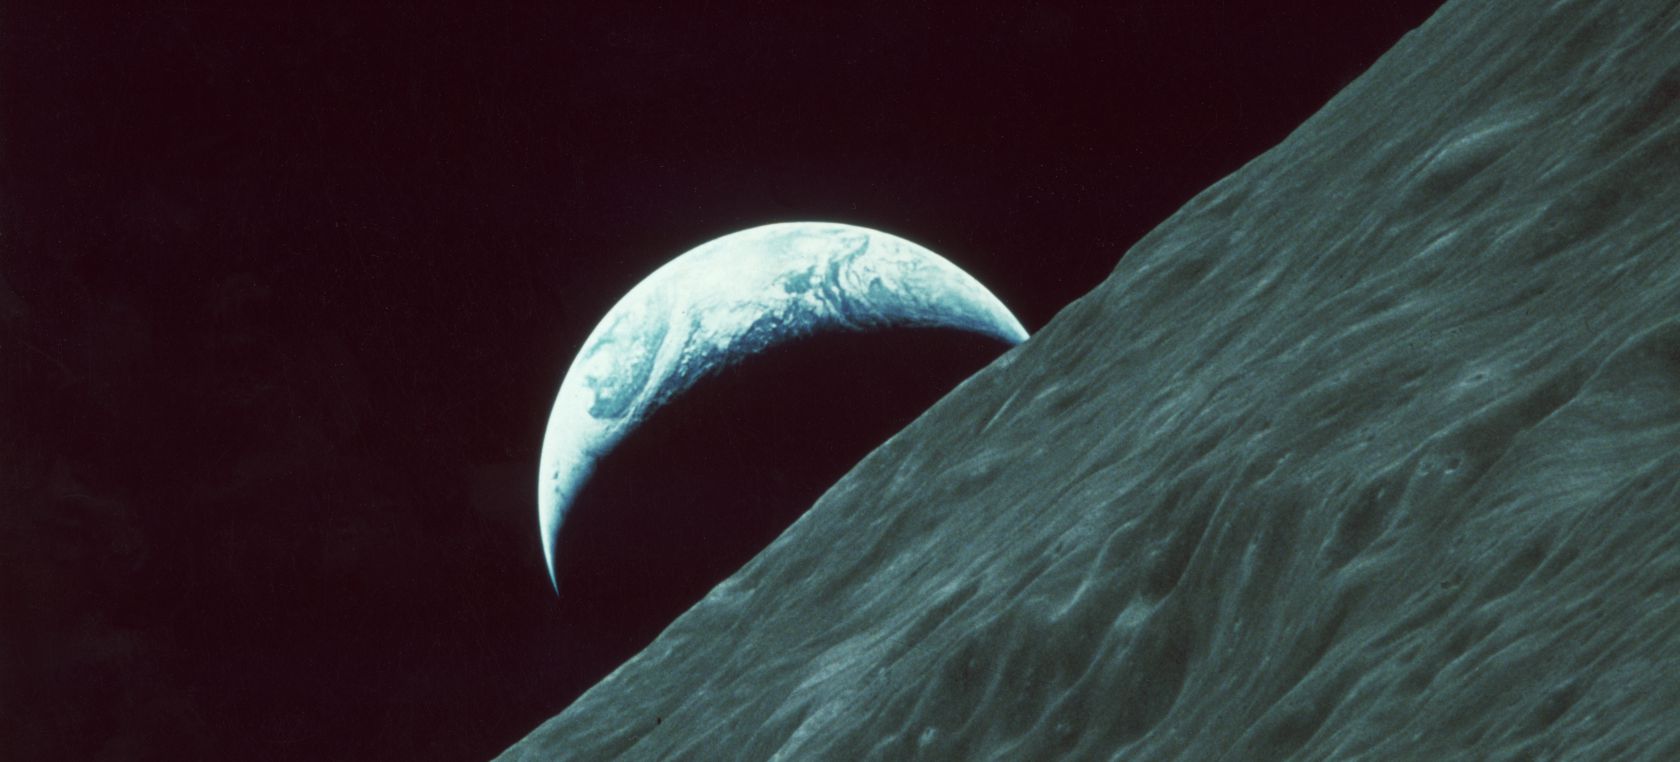 La Tierra, vista desde la superficie lunar.